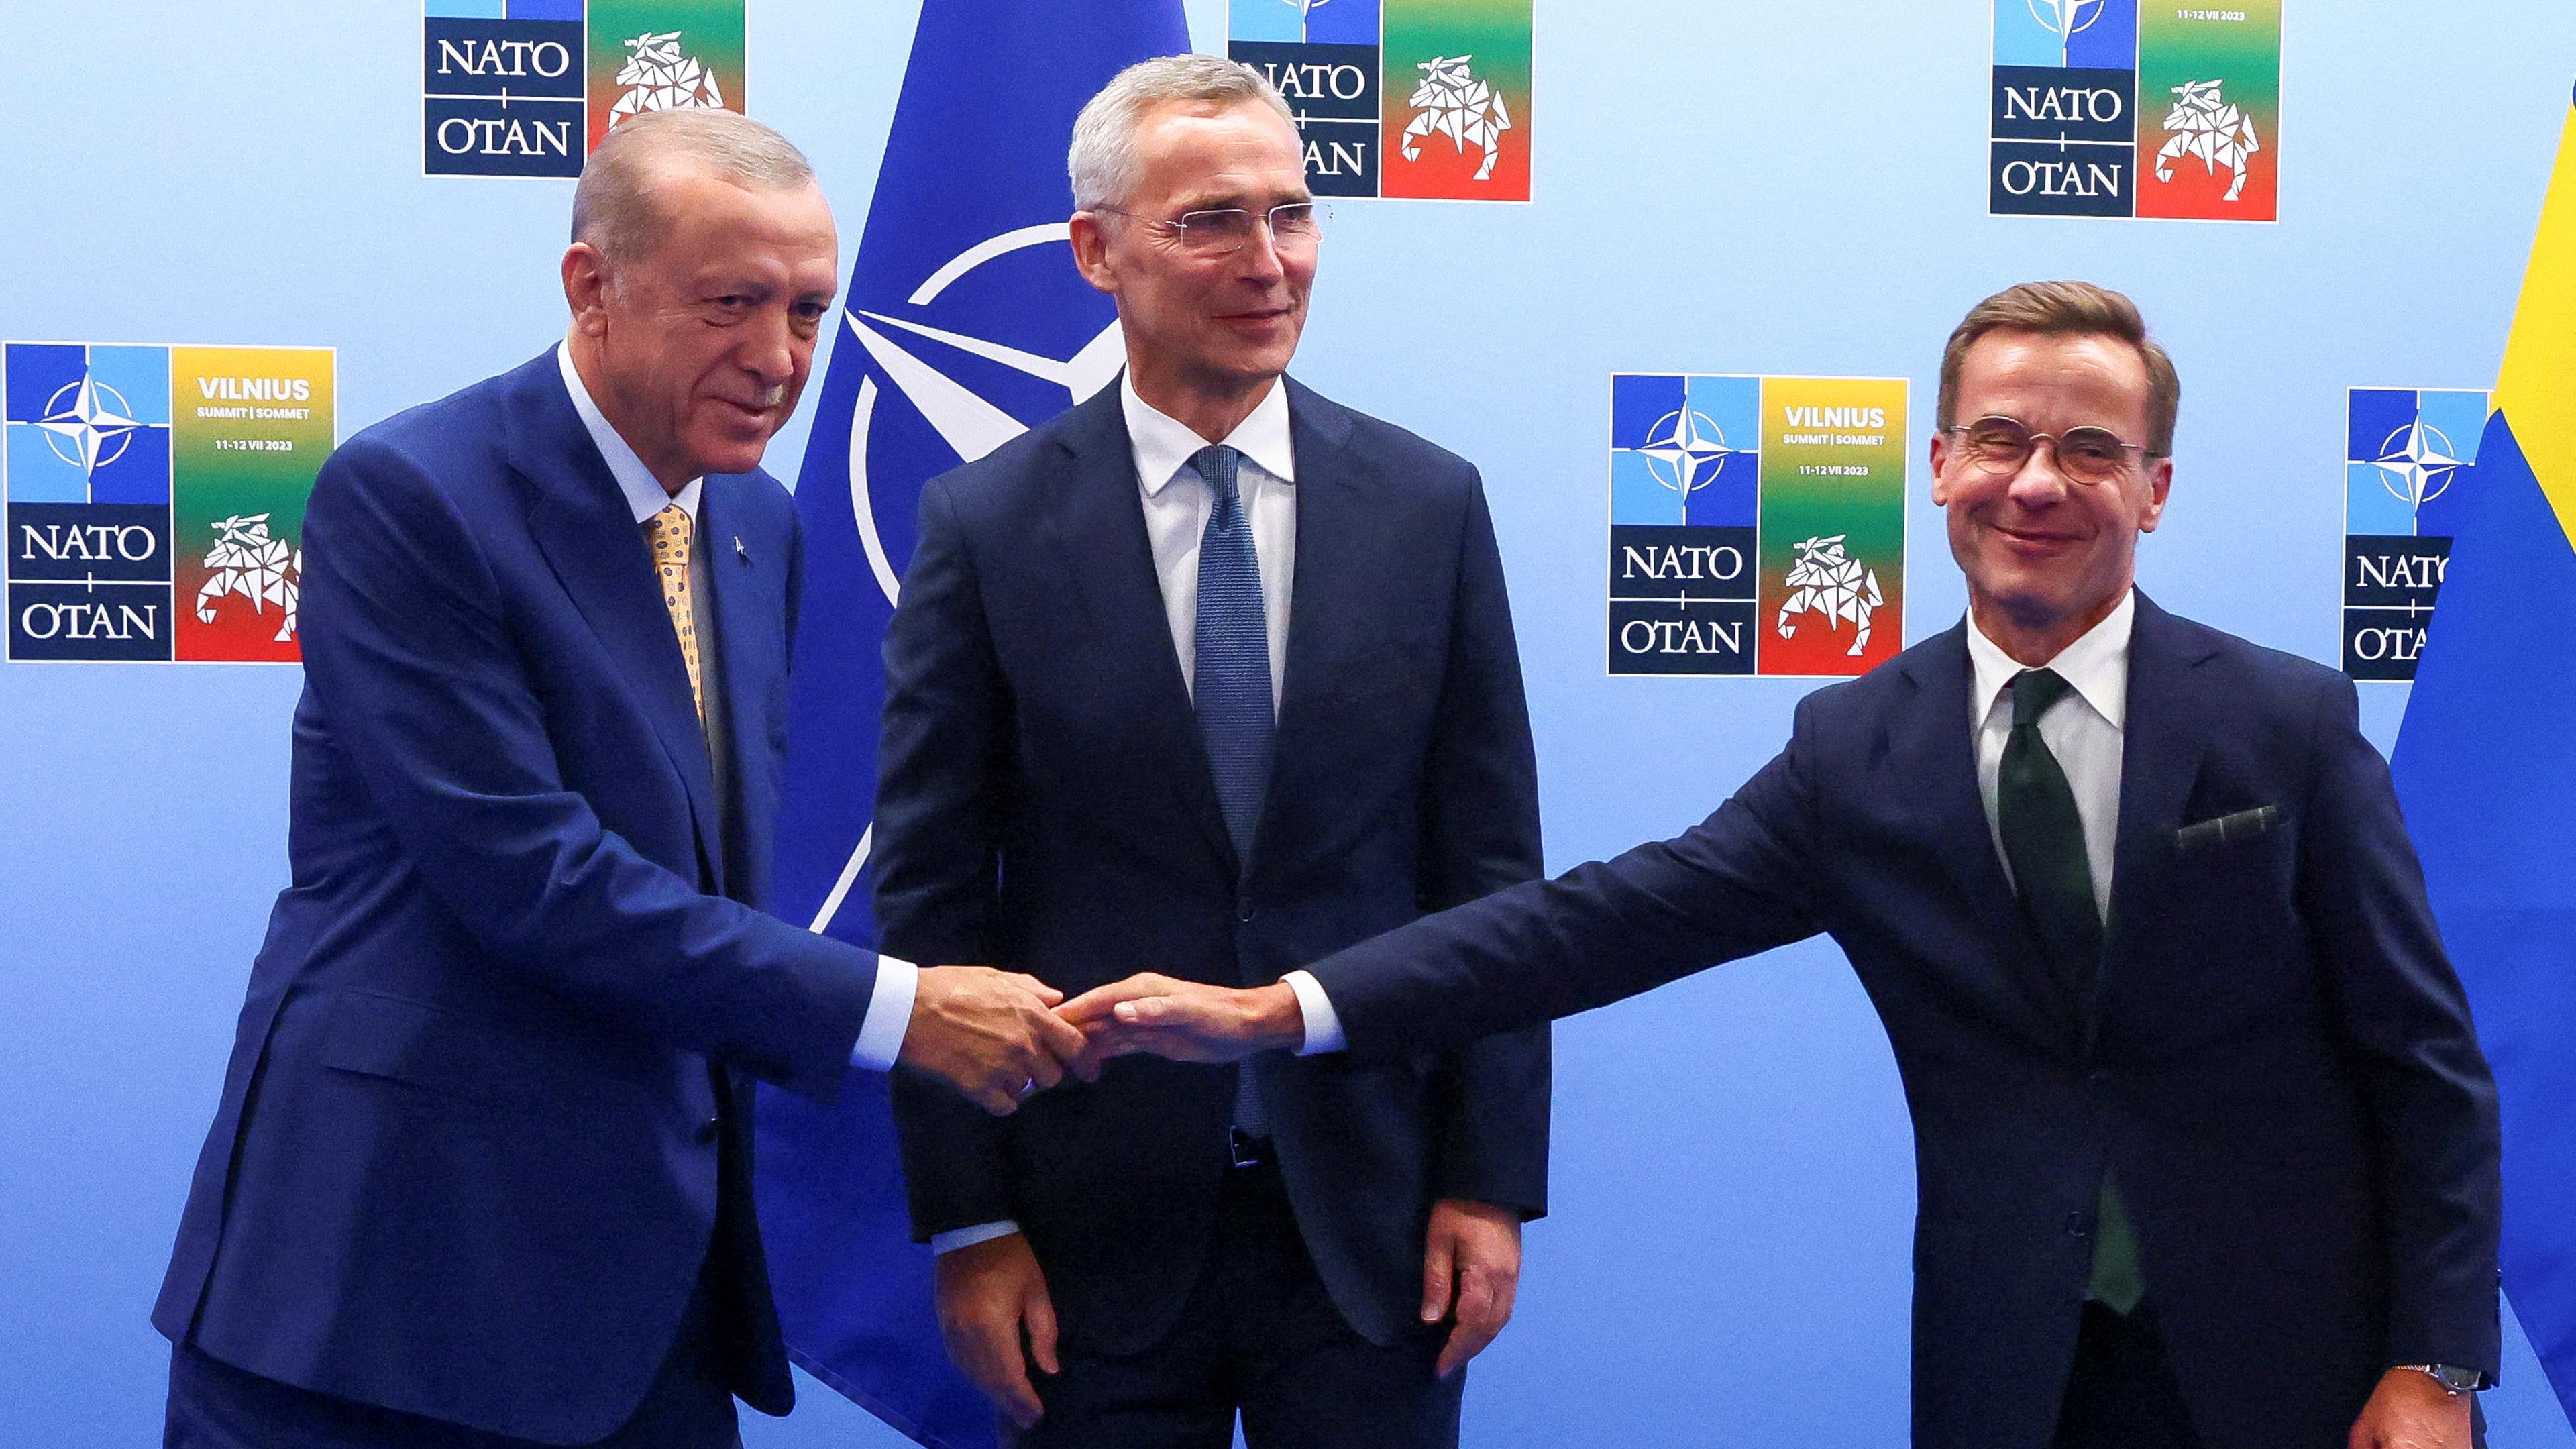 Der schwedische Premierminister und der türkische Präsident geben sich die Hand bei einer Pressekonferenz des NATO-Gipfels in Vilnius am 10.07.2023.